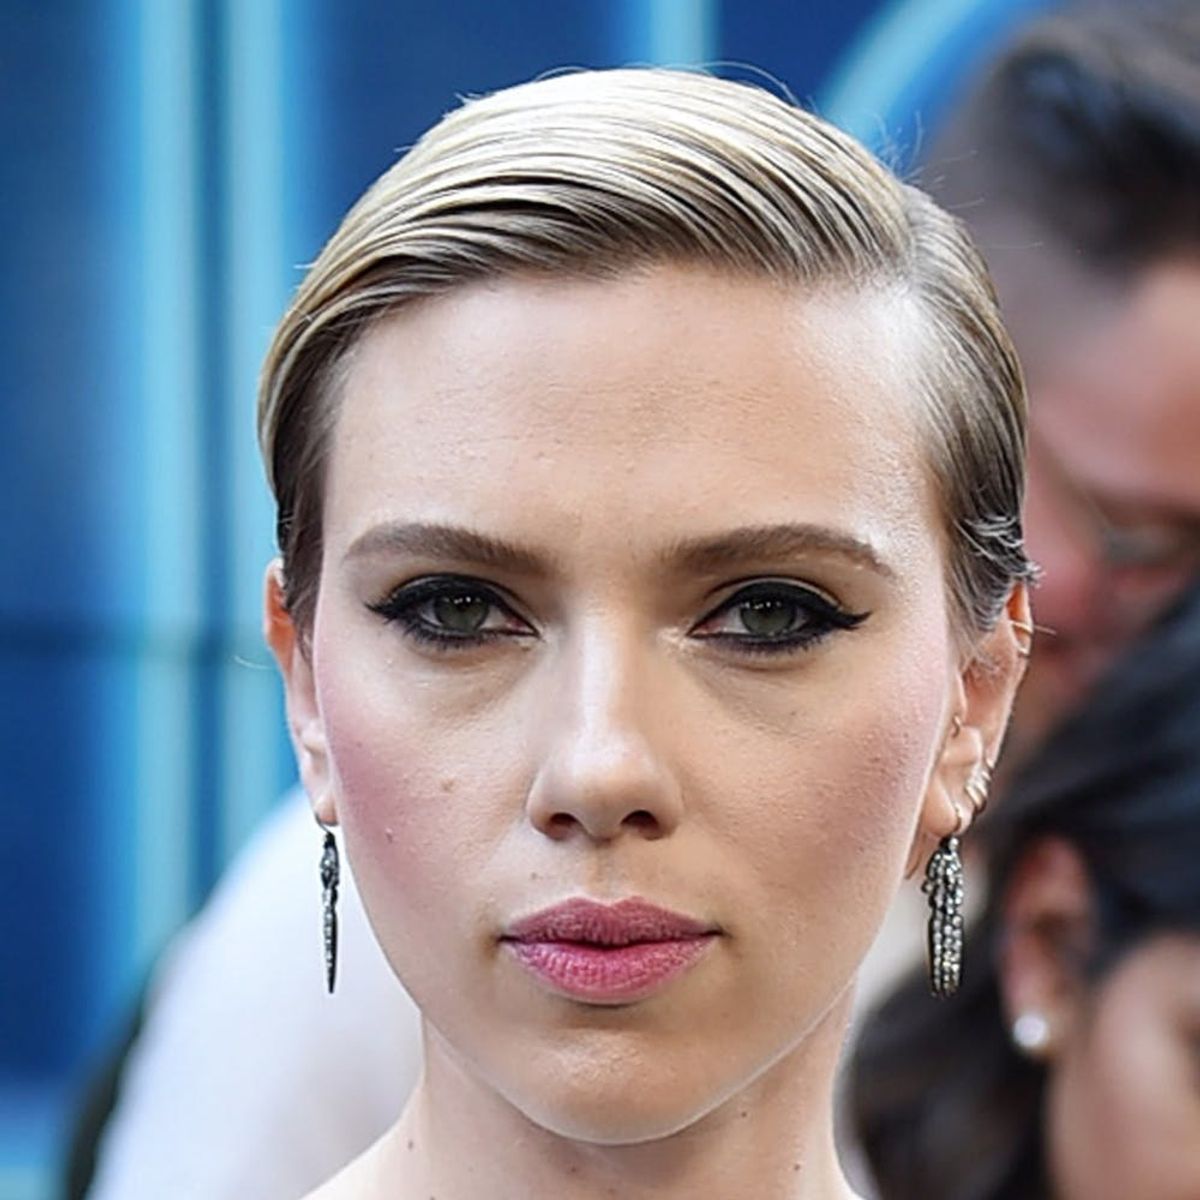 Did Scarlett Johansson Just Get a New Back Tattoo?